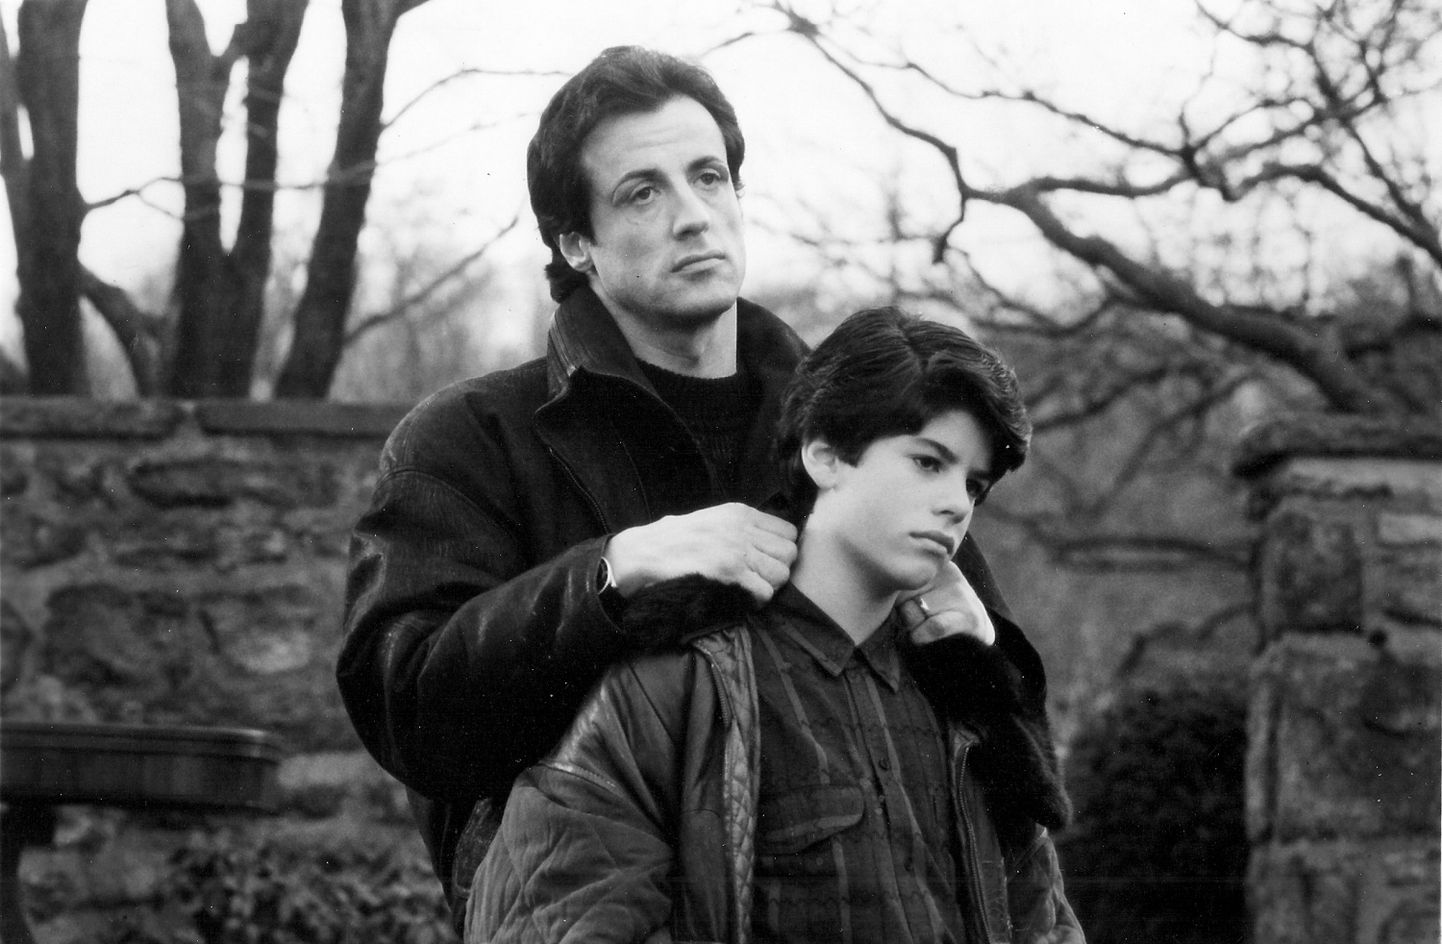 Rocky osatäitja Sylvester Stallone koos oma pojaga filmivõtetel.